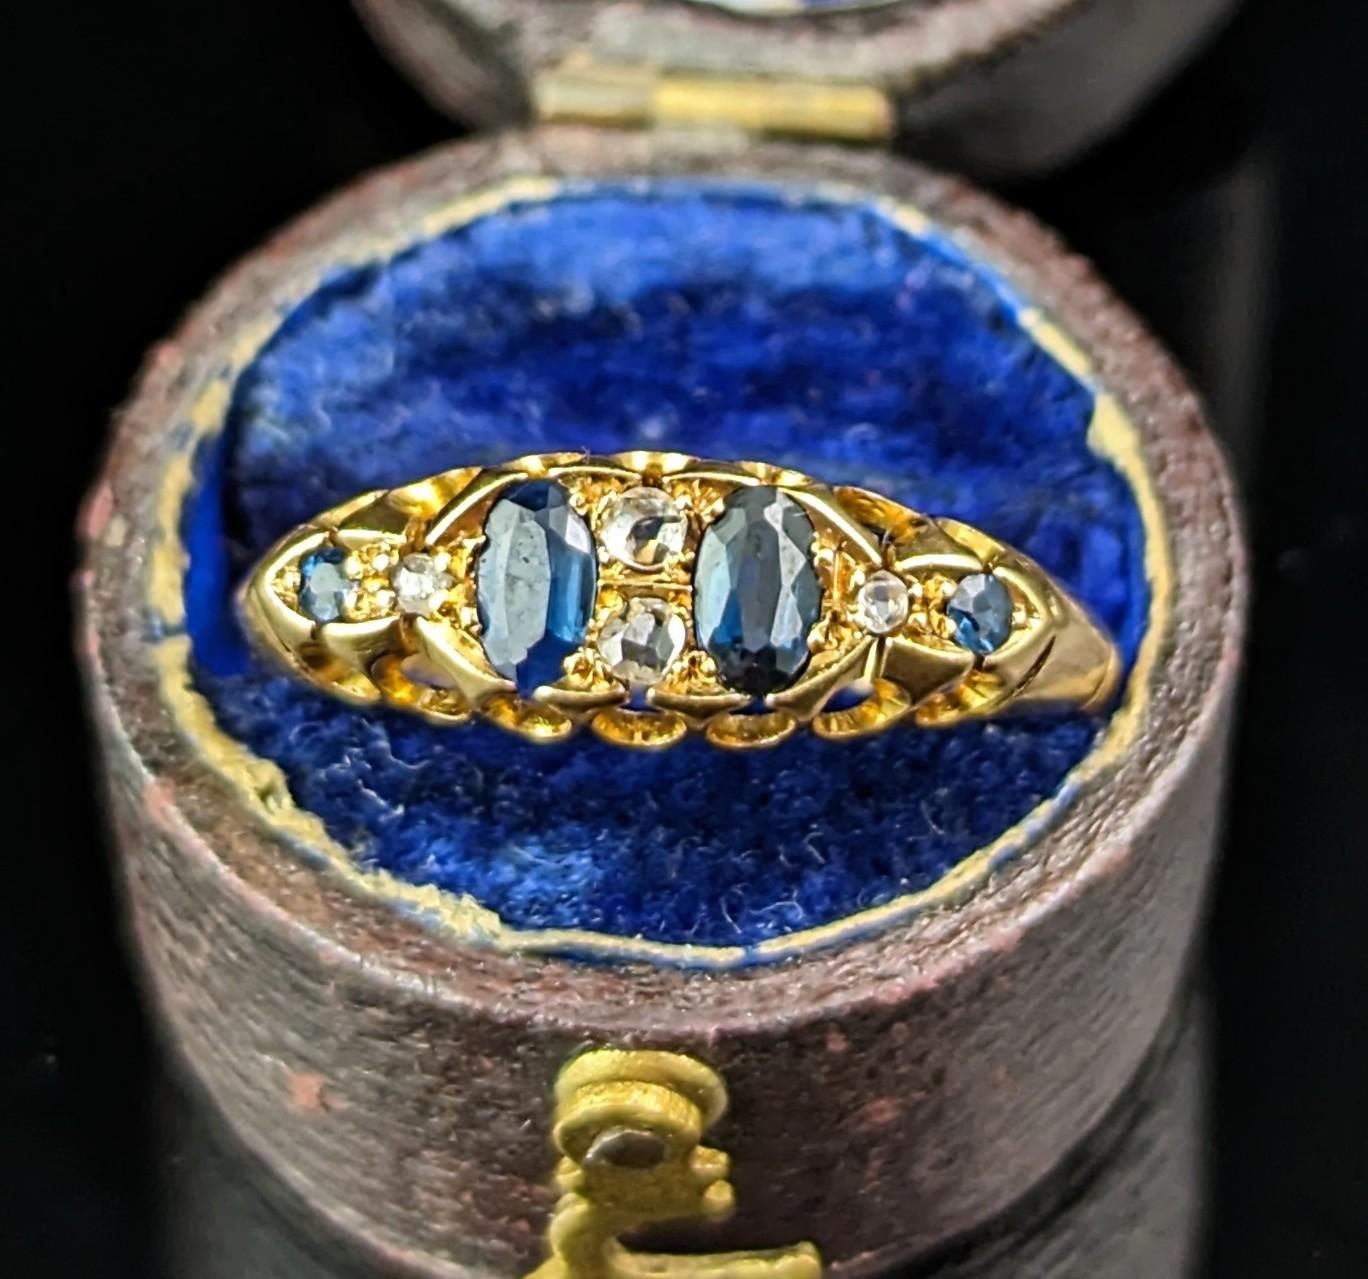 In diesen wunderschönen antiken Saphir- und Diamantring kann man sich nur verlieben.

Dieses Design aus reichhaltigem, butterweichem 18-karätigem Gold ist auch als Bootskopf-Stil bekannt. Es hat ein geschwungenes Design am oberen und unteren Rand